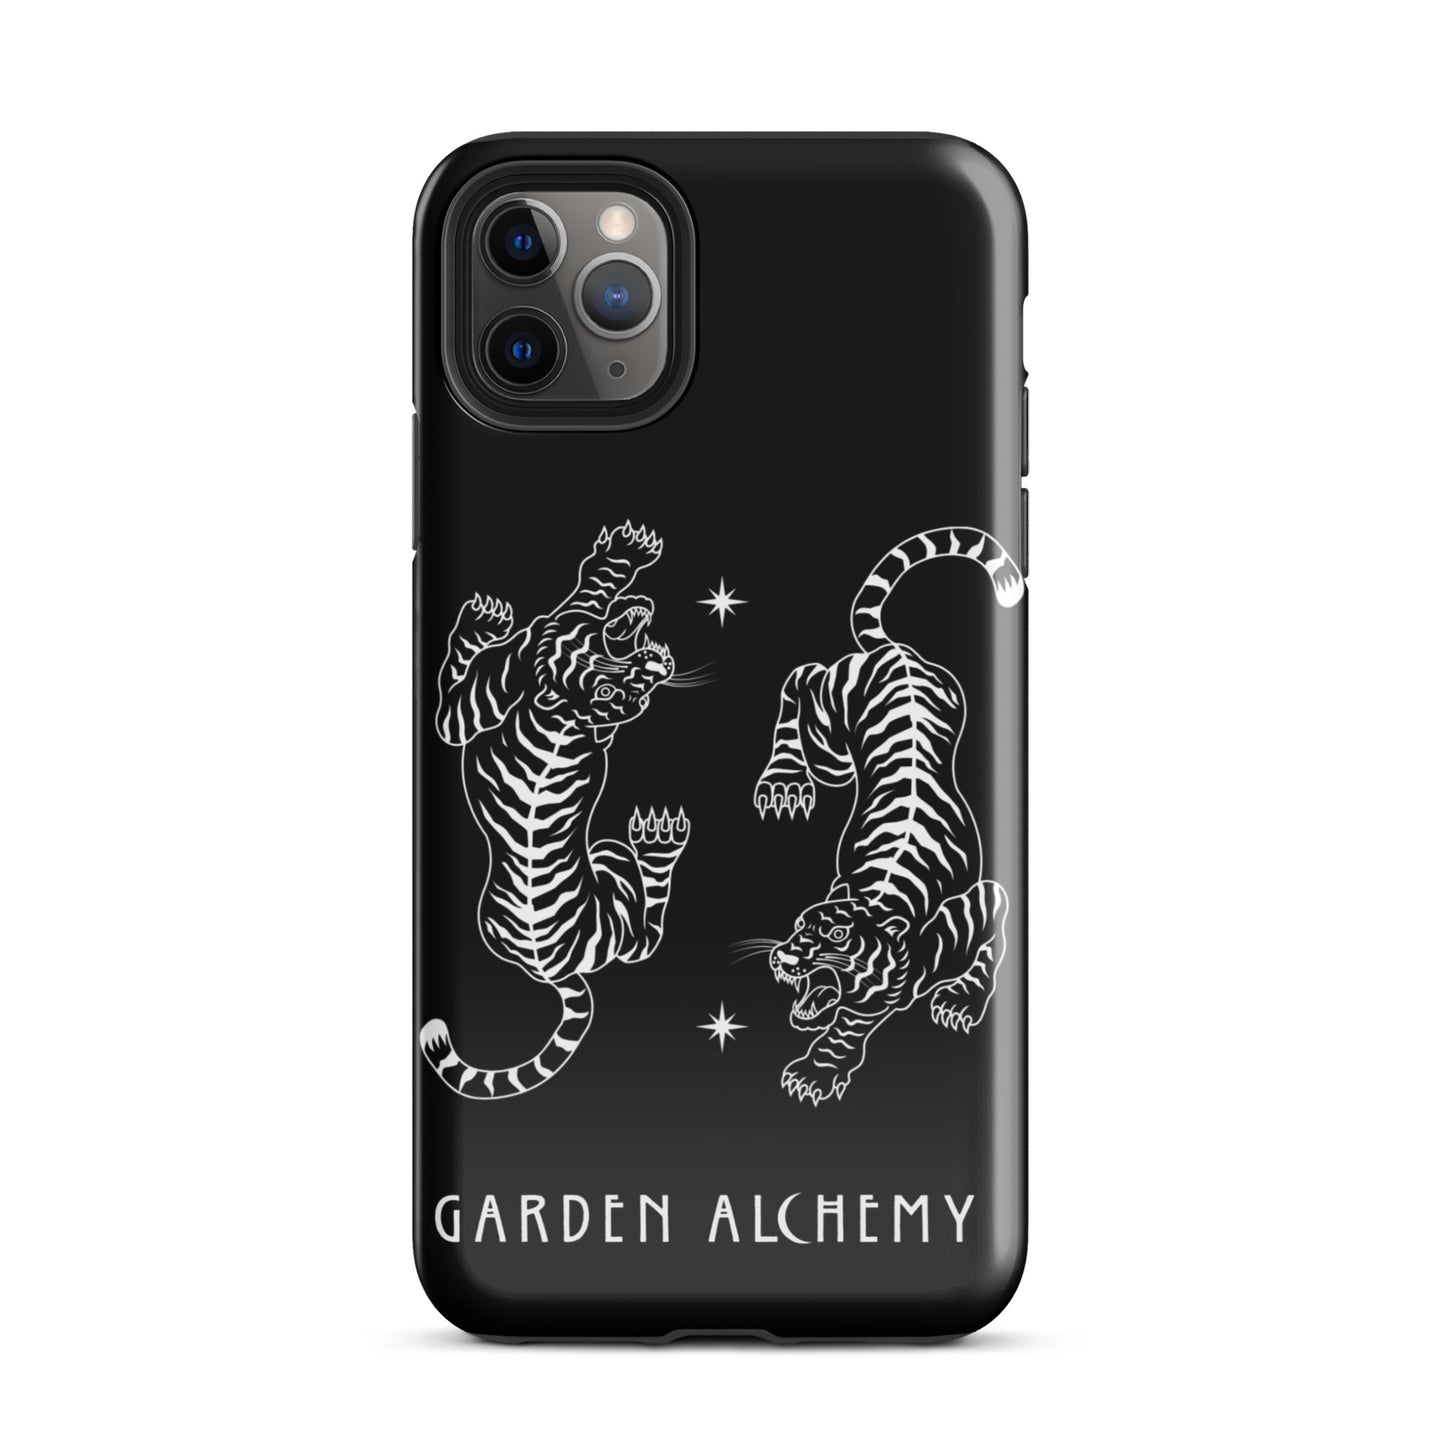 GARDEN ALCHEMY TIGER PHONE CASE